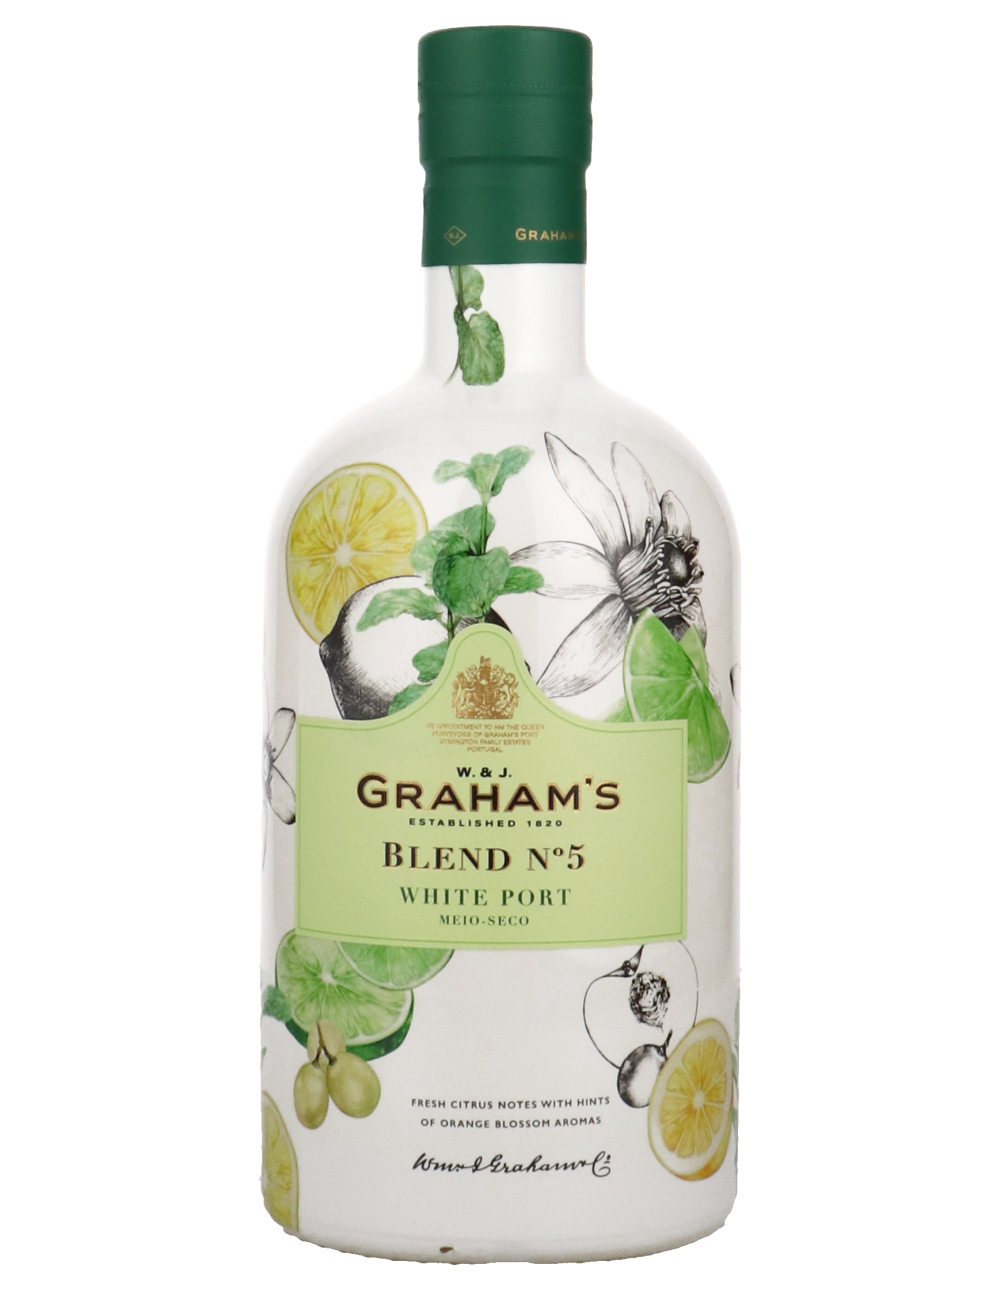 Graham's Blend No. 5 White Port